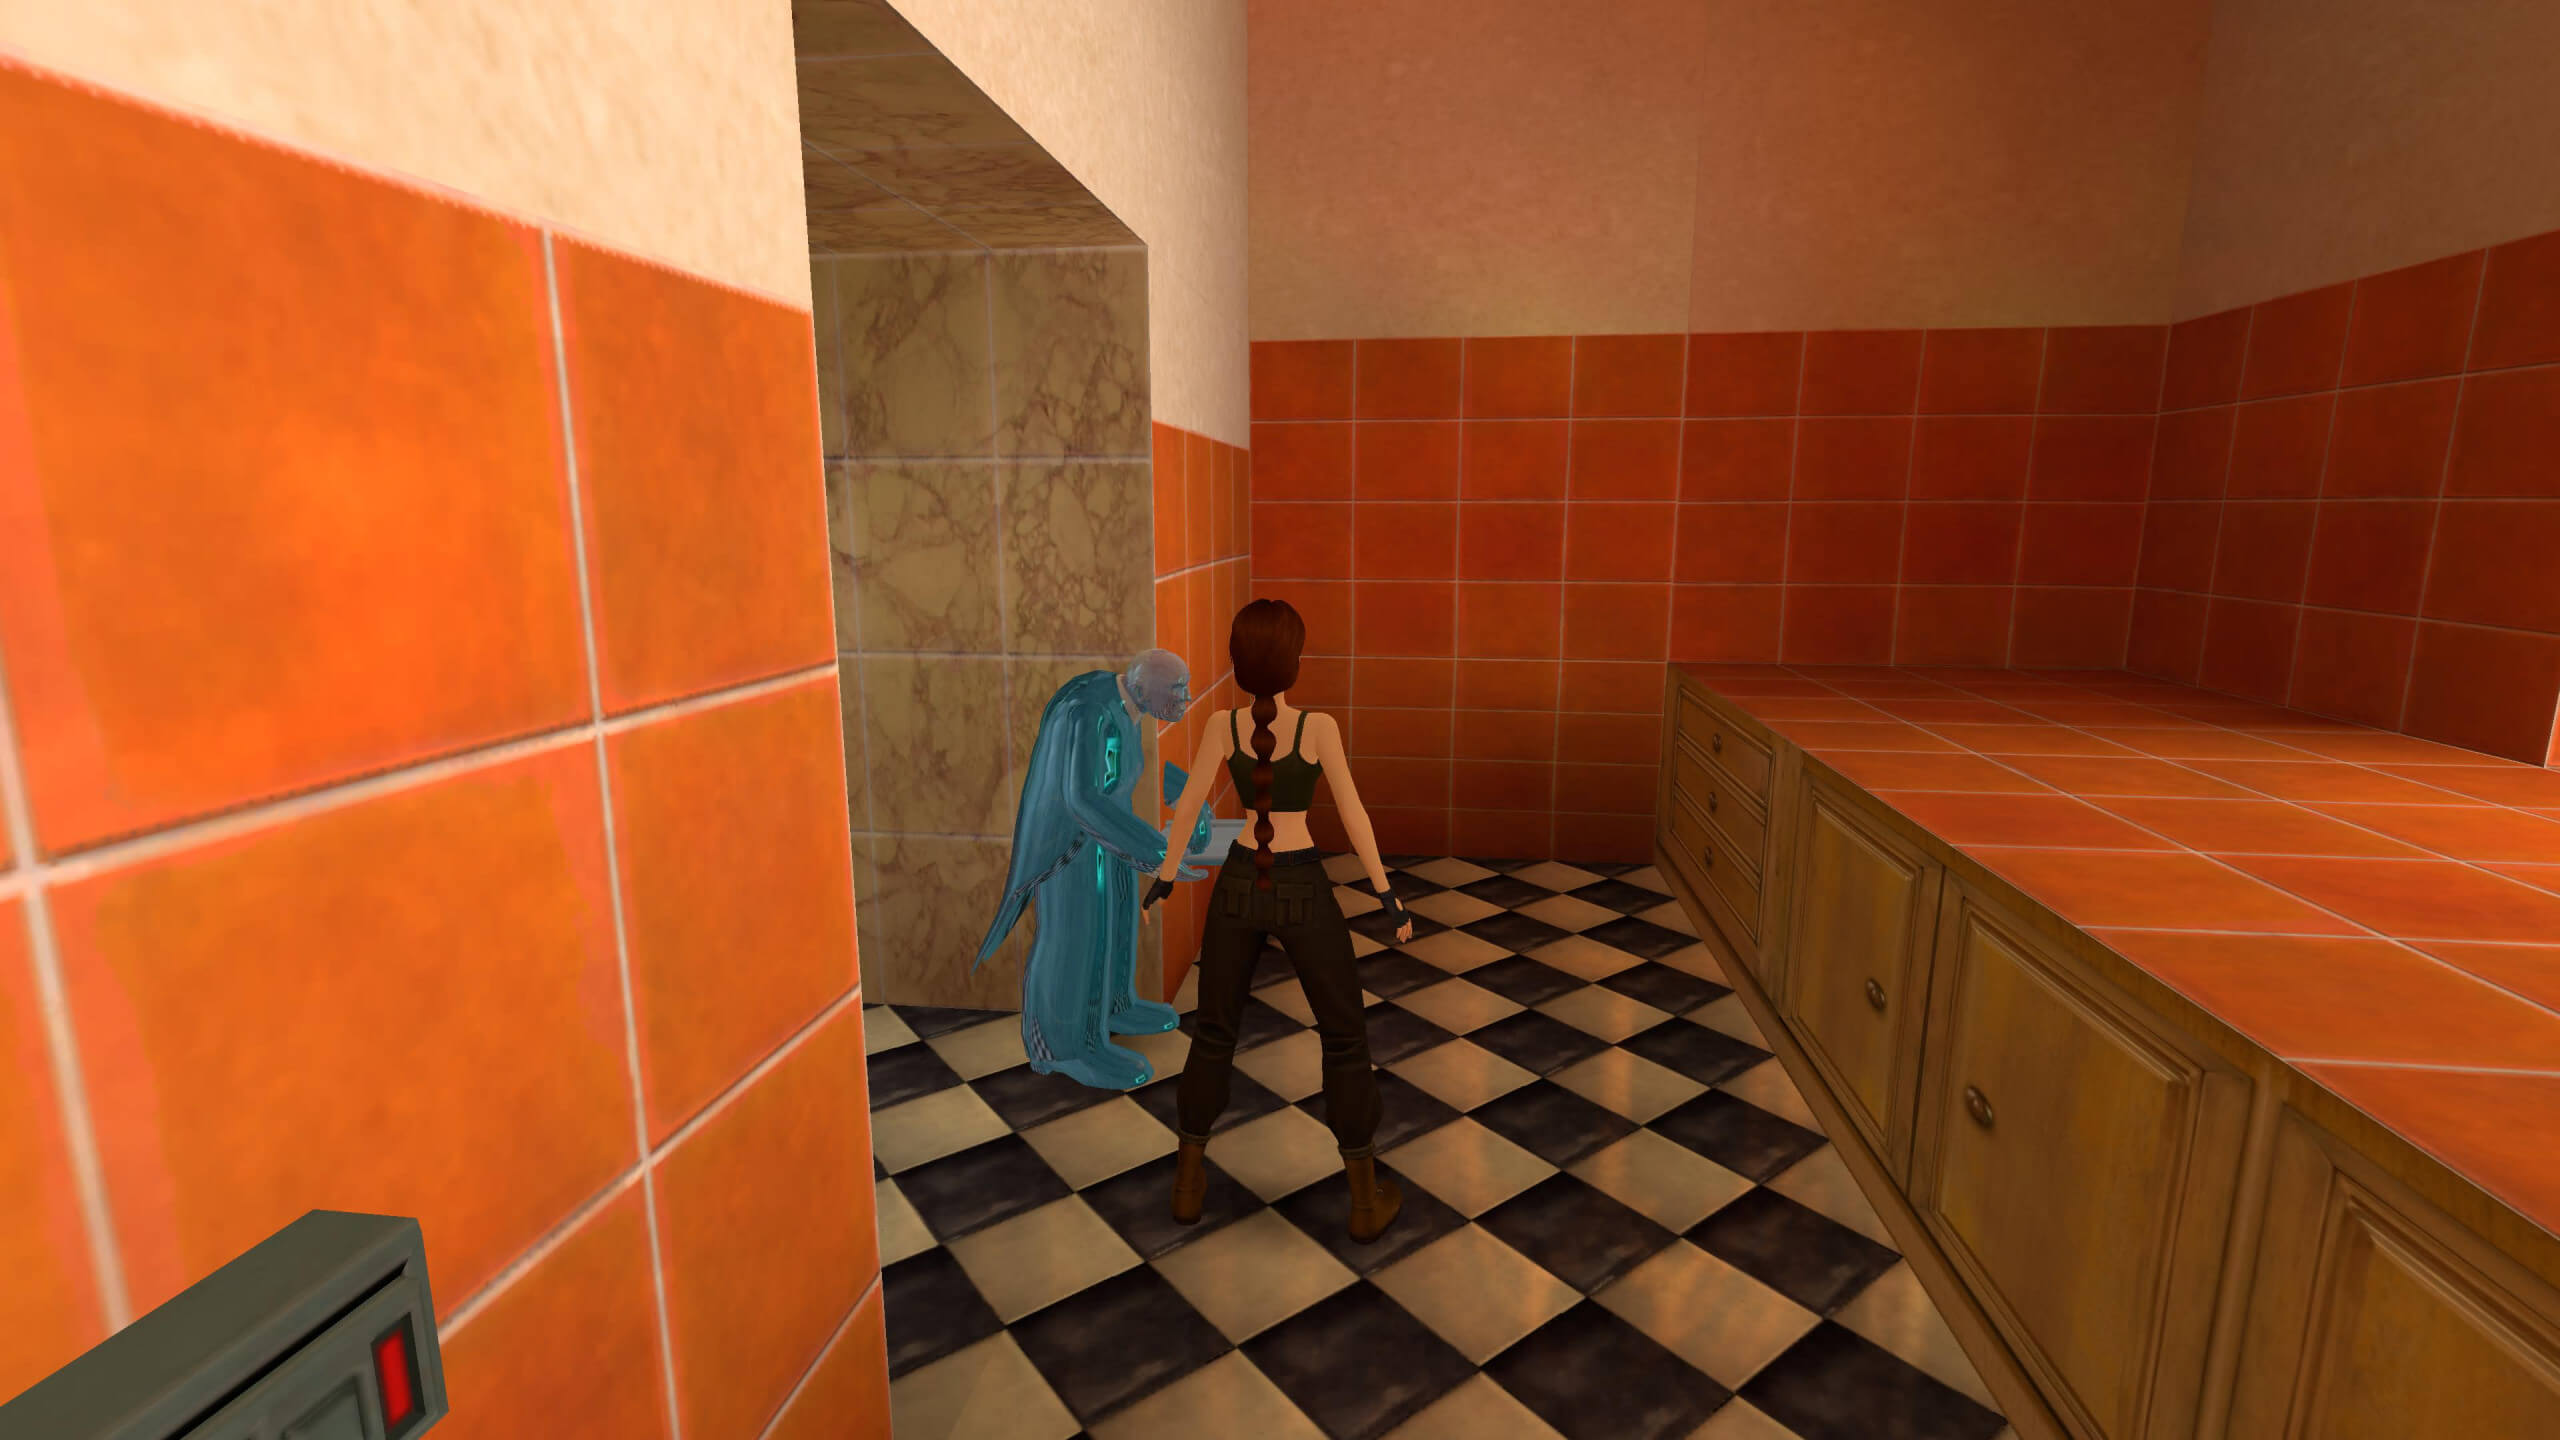 Une capture d'écran de Tomb Raider 2 où Lara se tient dans sa cuisine.  Devant elle se trouve son majordome Winston qui est gelé après avoir été enfermé au congélateur.